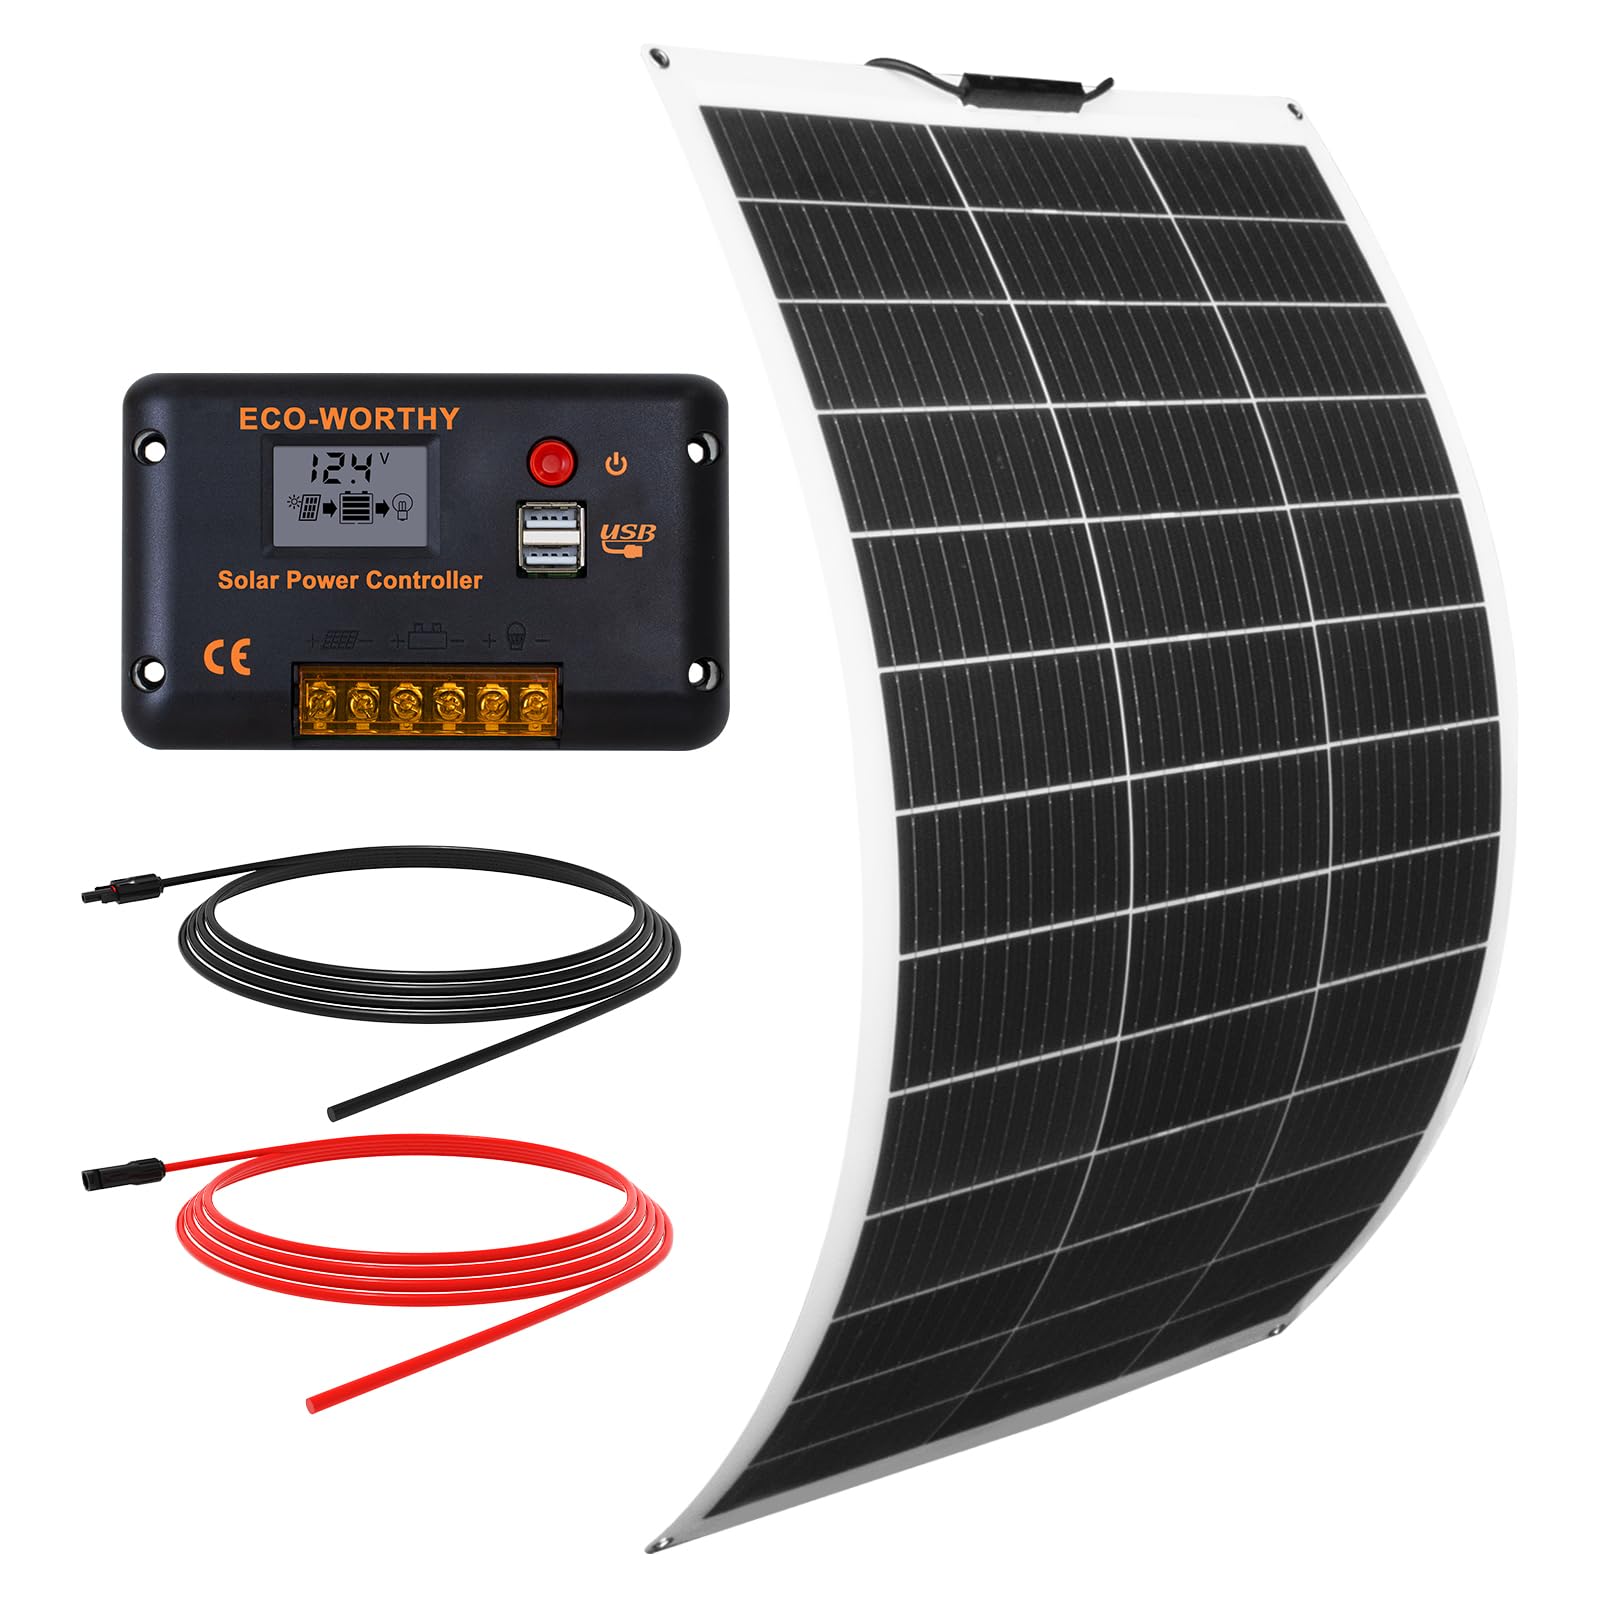 ECO-WORTHY 130W12V Flexibles Solarpanel Kit netzunabhängig Off Grid: 130W Solarpanel + 30A LCD Display PWM Laderegler + 5m Solarkabel für Wohnwagen, Wohnmobil, Boot, Kabine, Anhänger